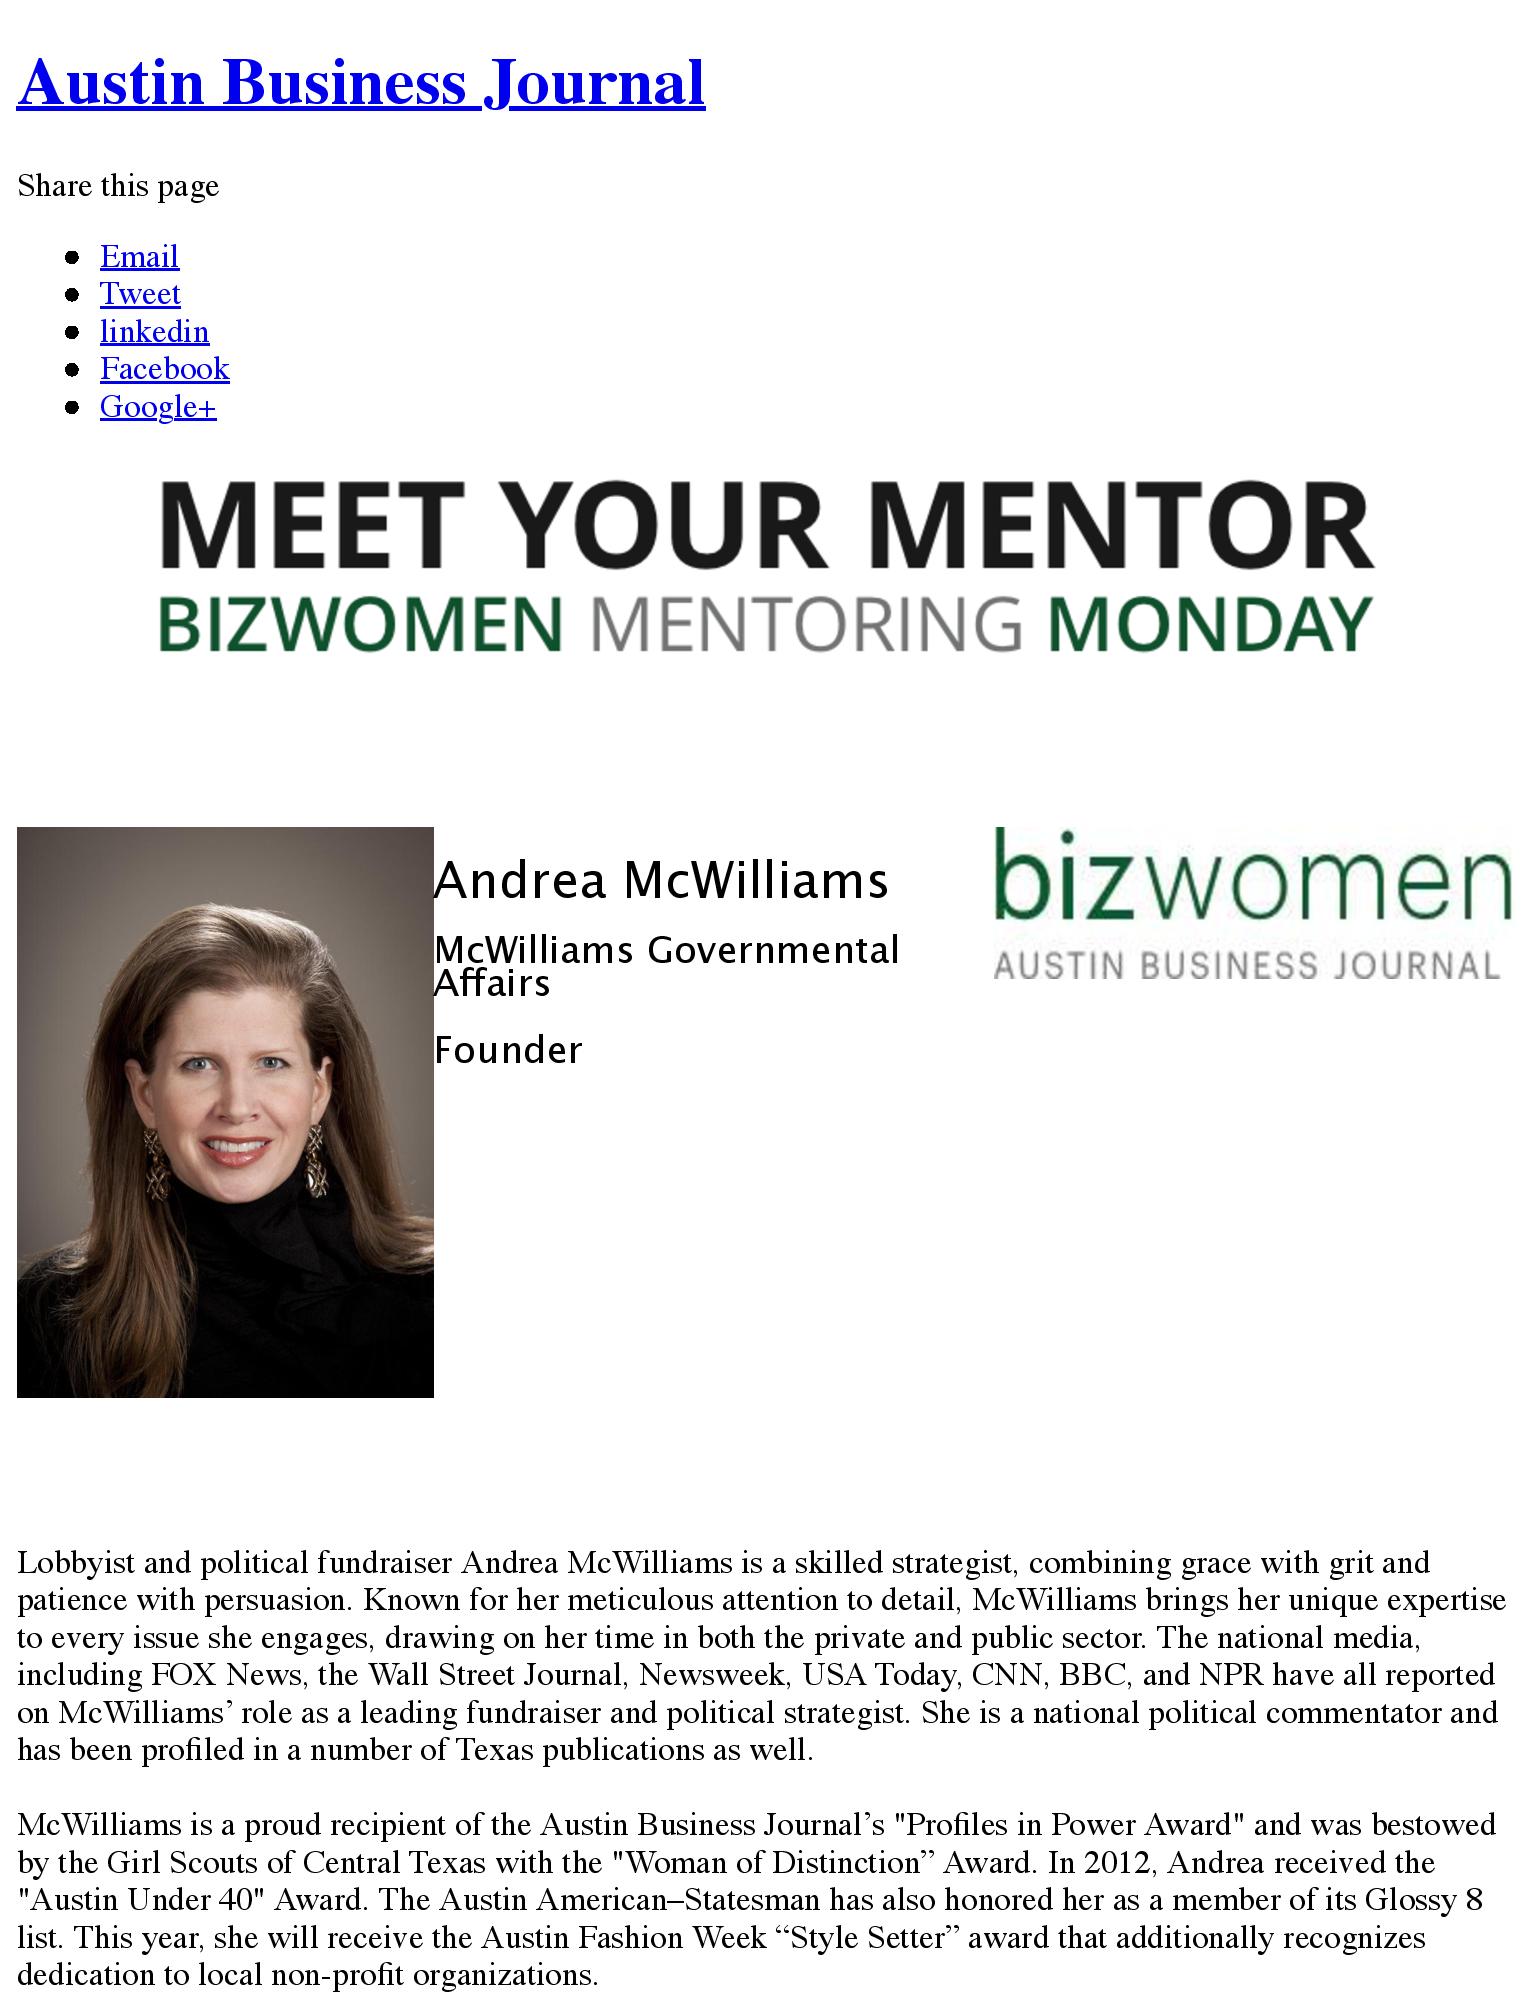 Meet Your Mentor - Austin Business Journal